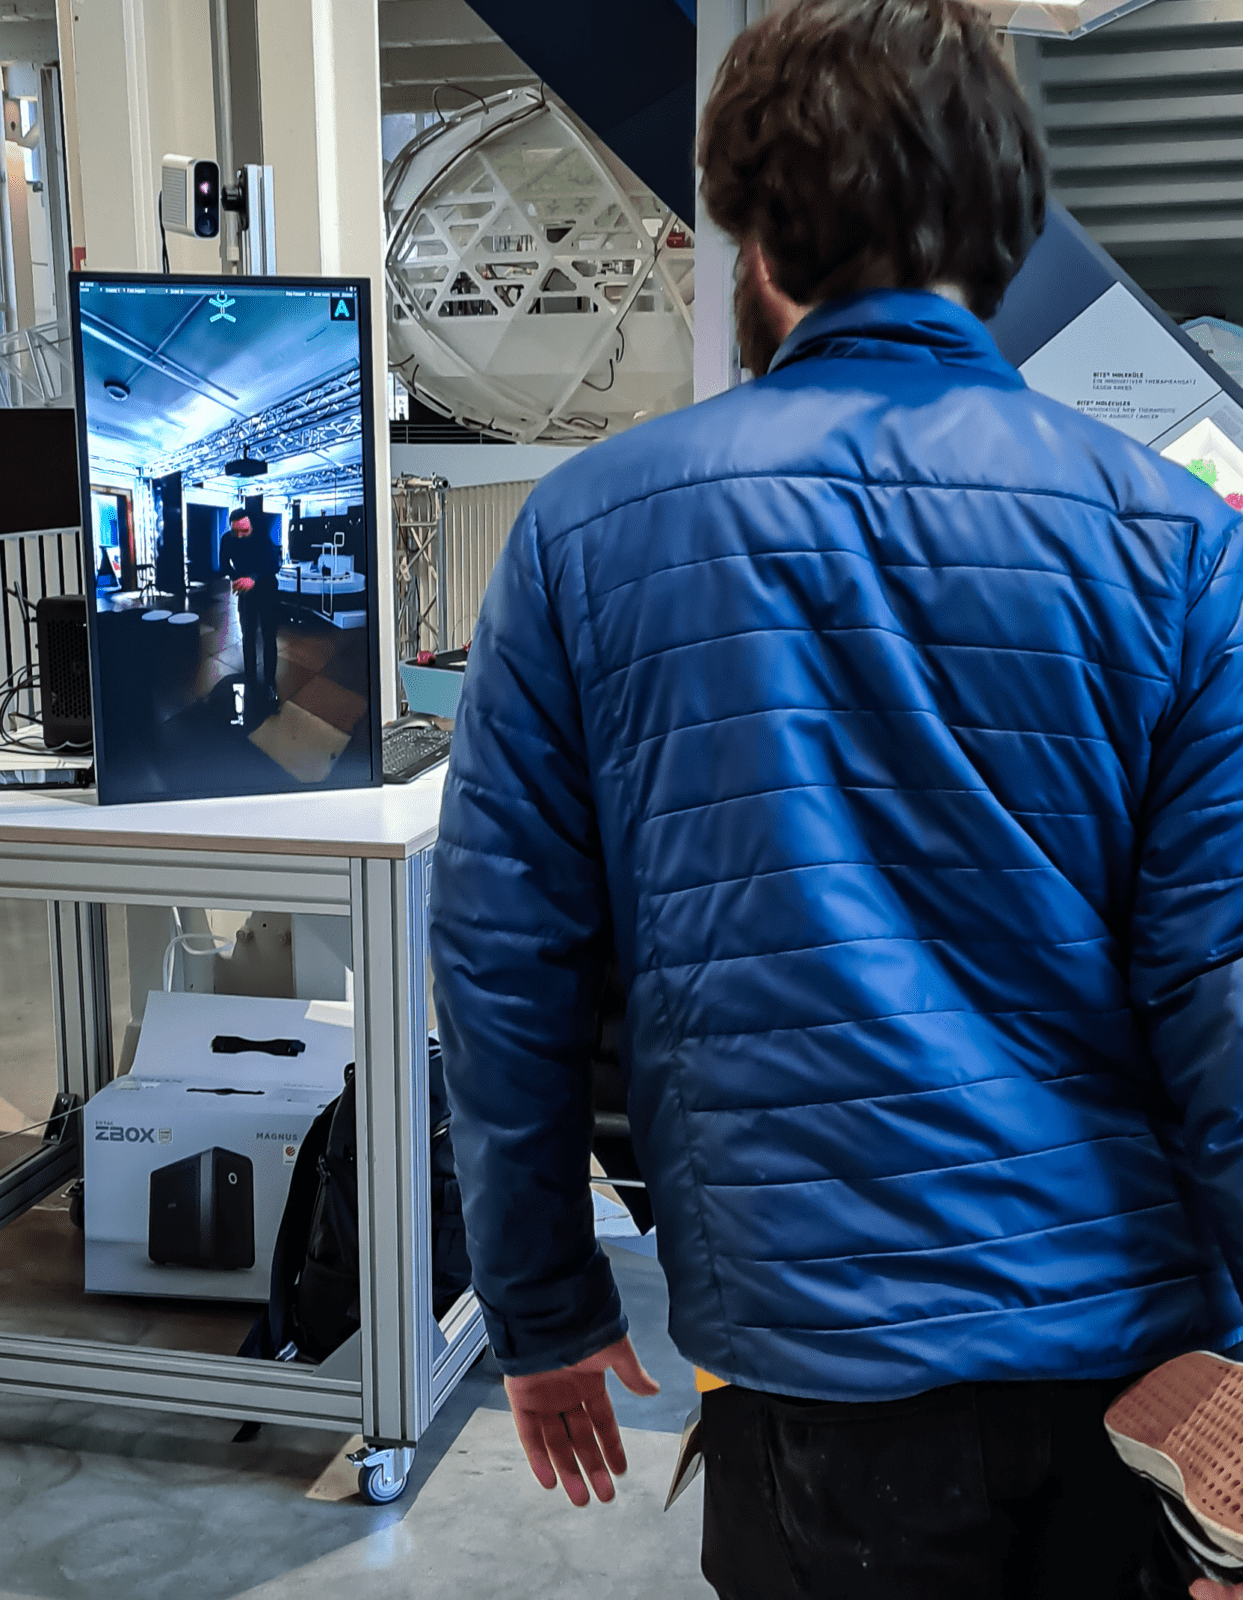 Auf dem Bild steht ein Mann mit dem Rücken zum Bild und schaut auf ein übergroßes Tablet, dass einen Mann in einem Museumsraum zeigt.